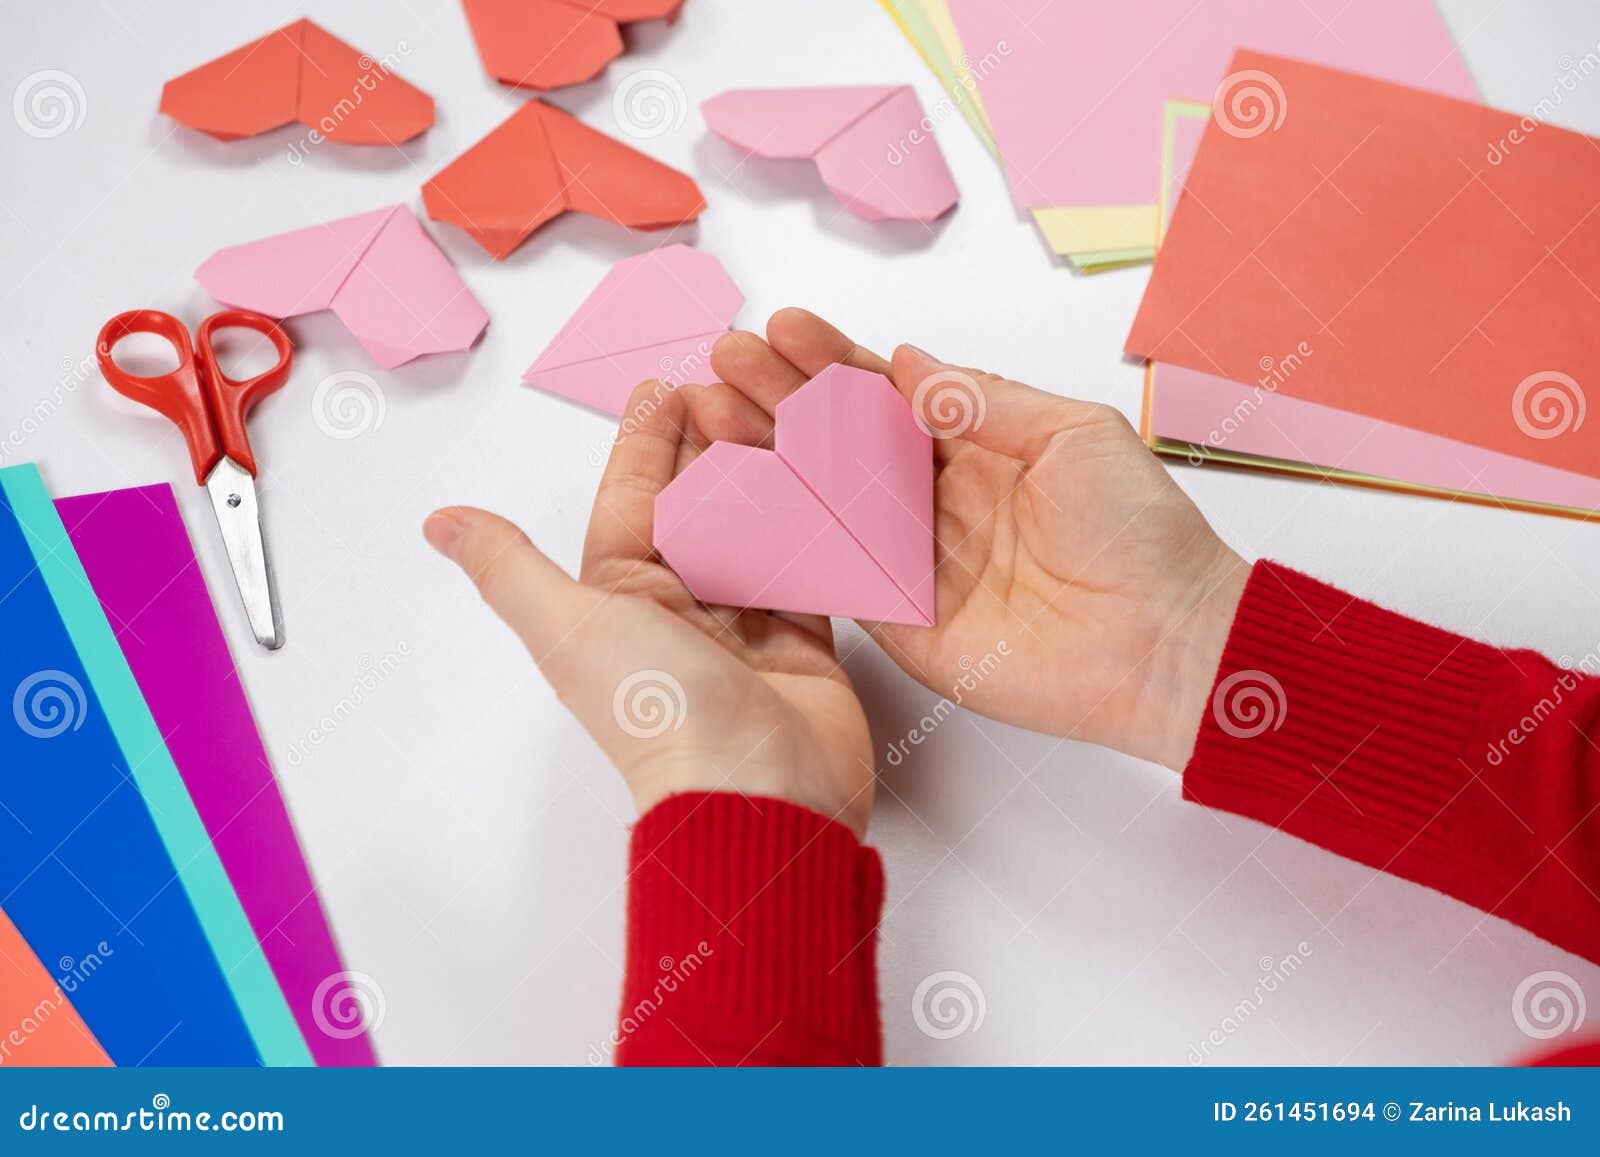 Corazones de Origami para San Valentin // Origami Heart 